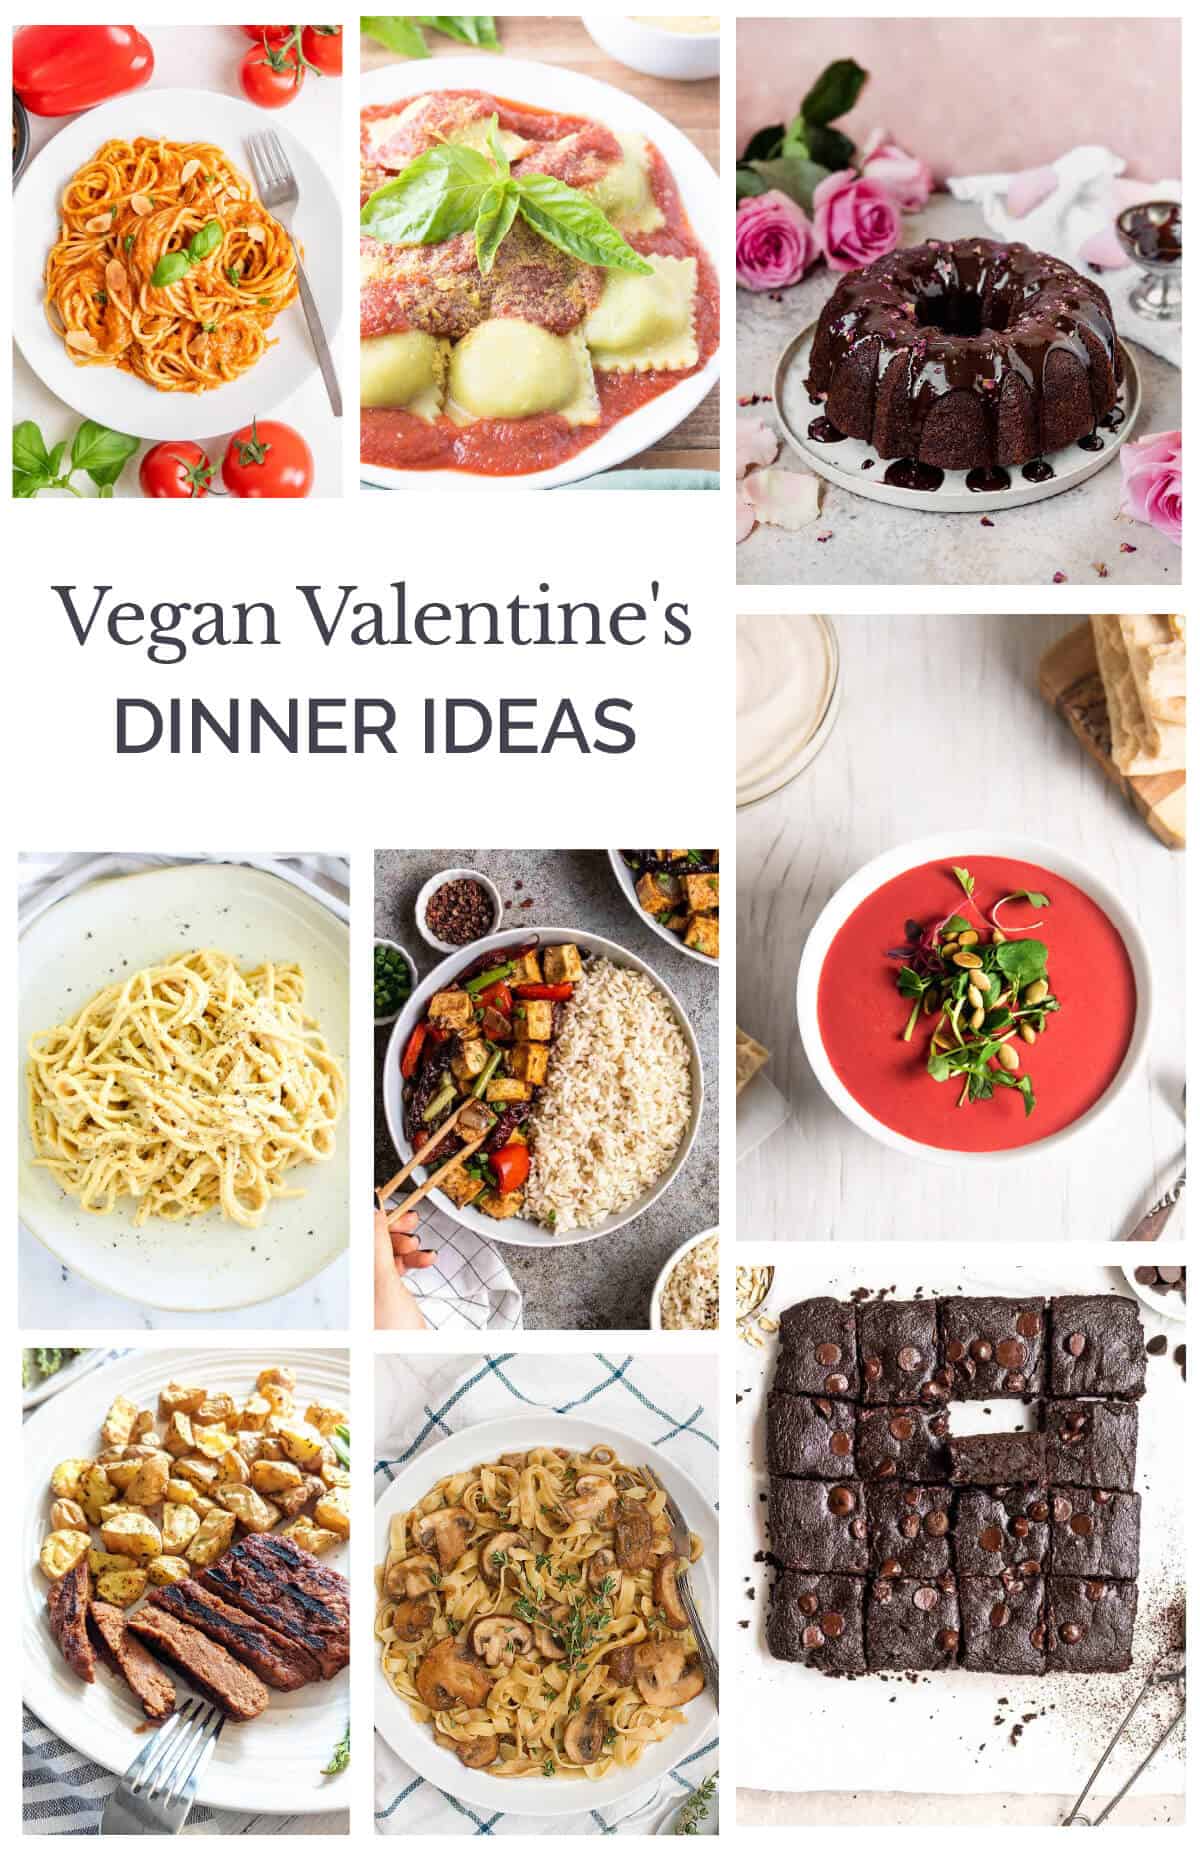 5 platos para preparar la cena de San Valentín - Mejor con Salud